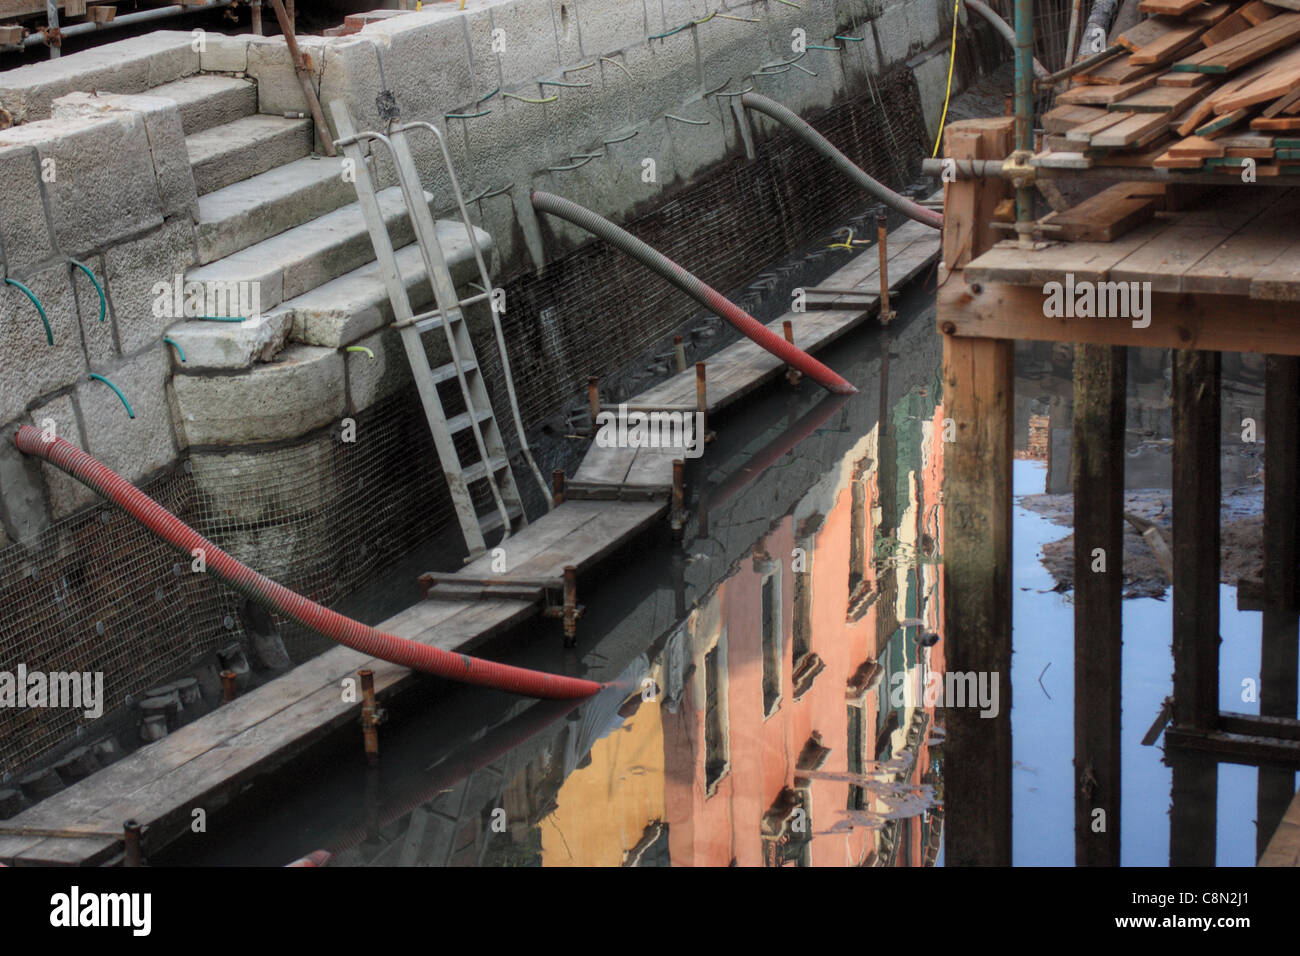 Trockenrinnenbaggern Wartung der Kanäle von Venedig Stockfoto